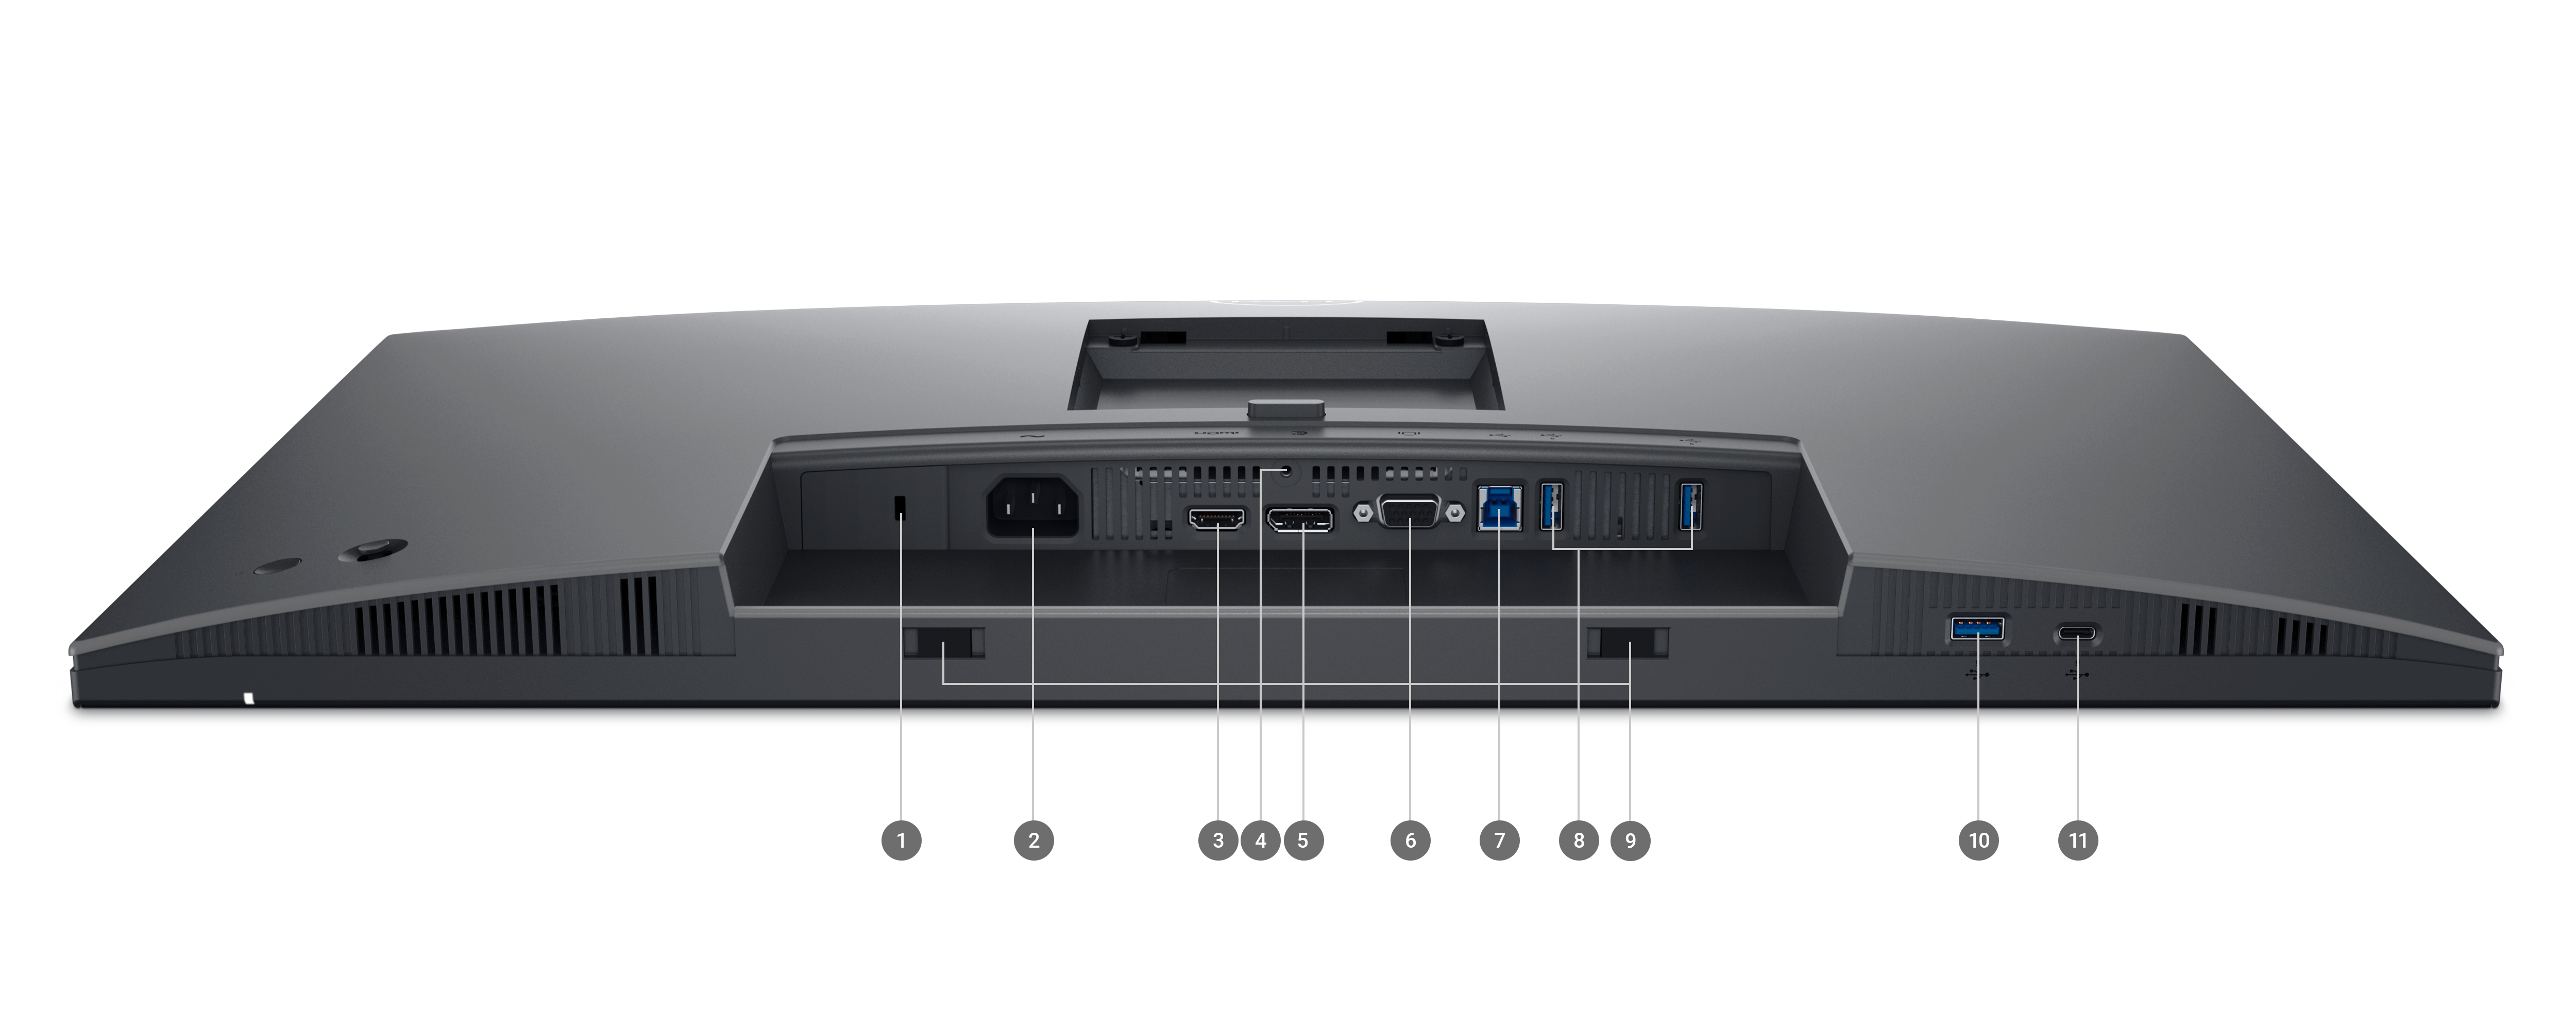 Монитор Dell P-Series 2725H с опущенным экраном и цифрами от 1 до 11, обозначающими порты и слоты продукта.